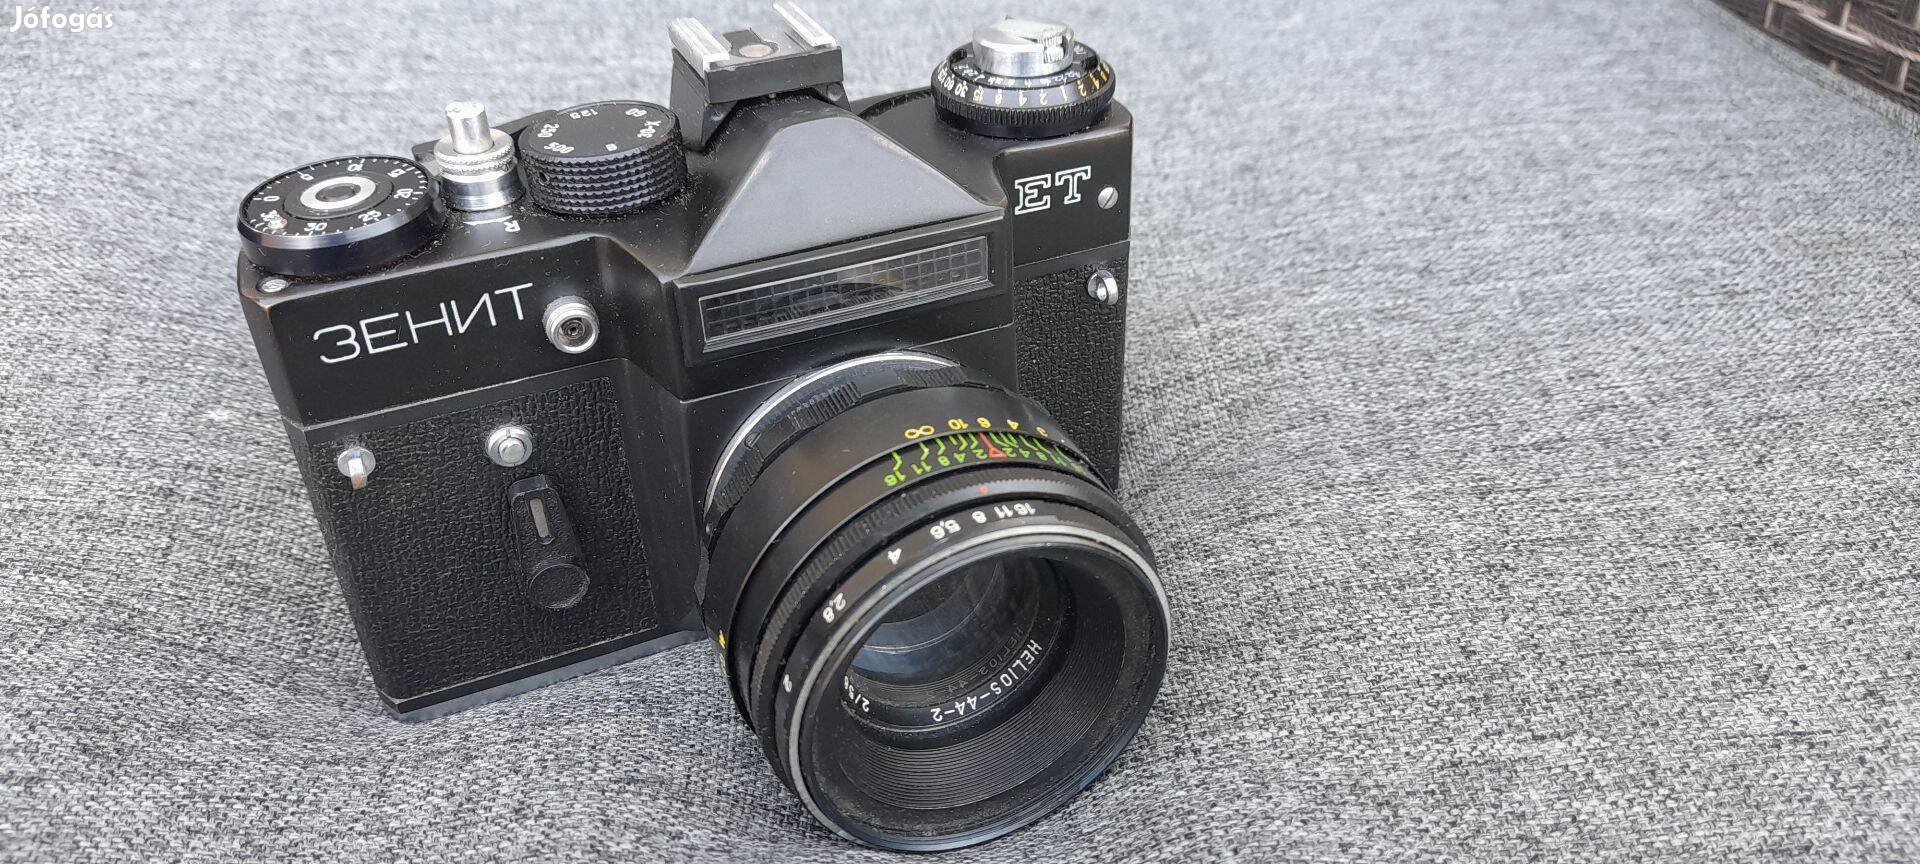 Zenit ET retro fényképezőgép, Helios MC 44 mm objektívvel